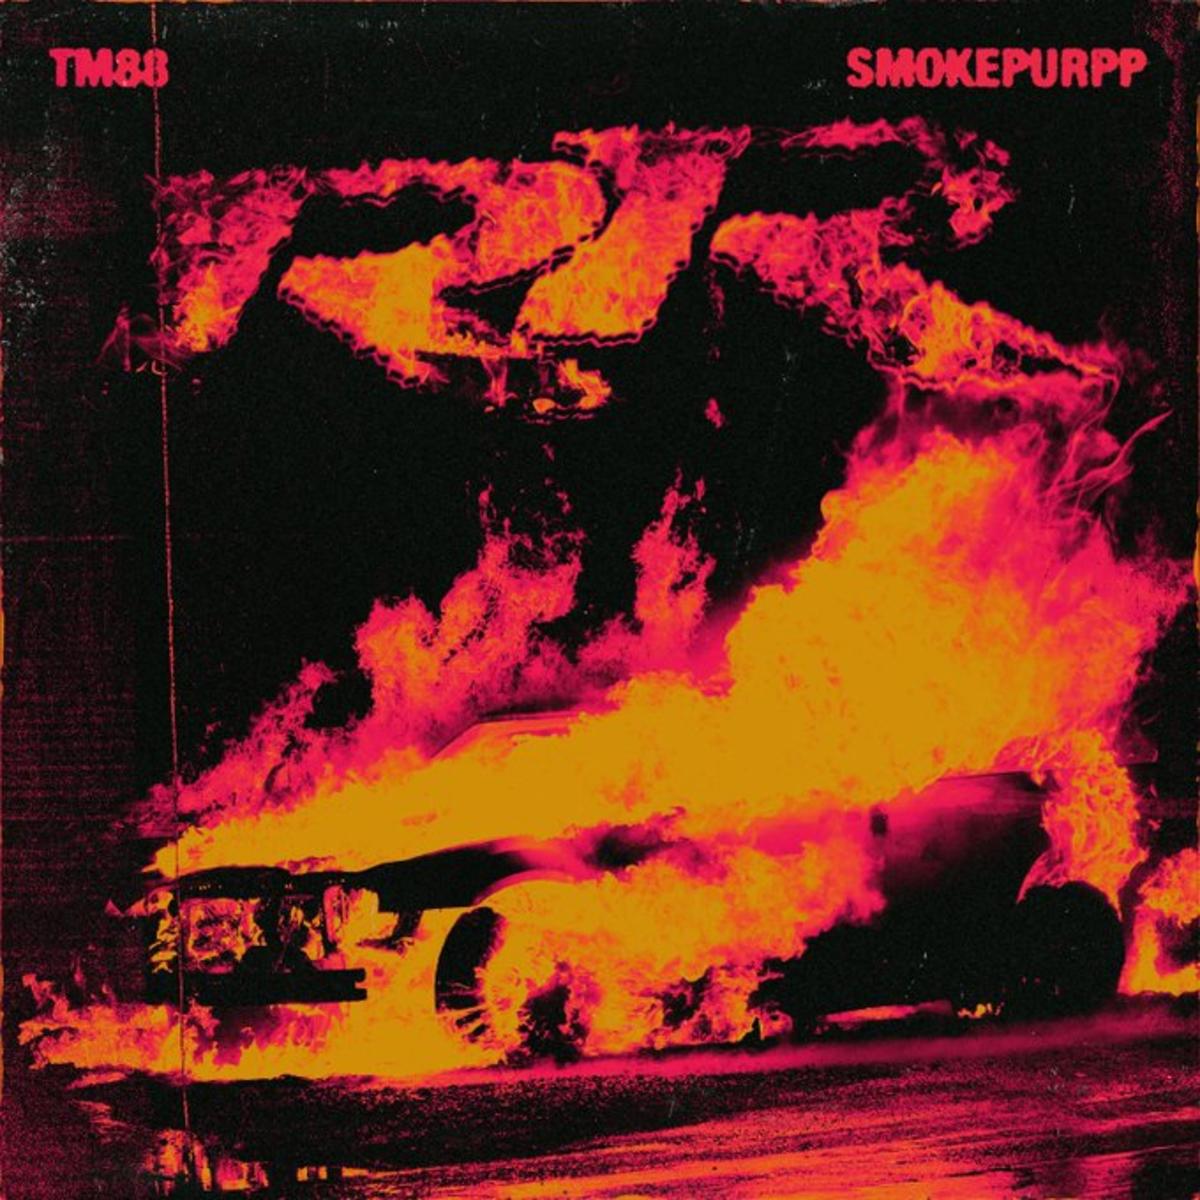 TM88 & Smokepurpp – “RR” [Audio]